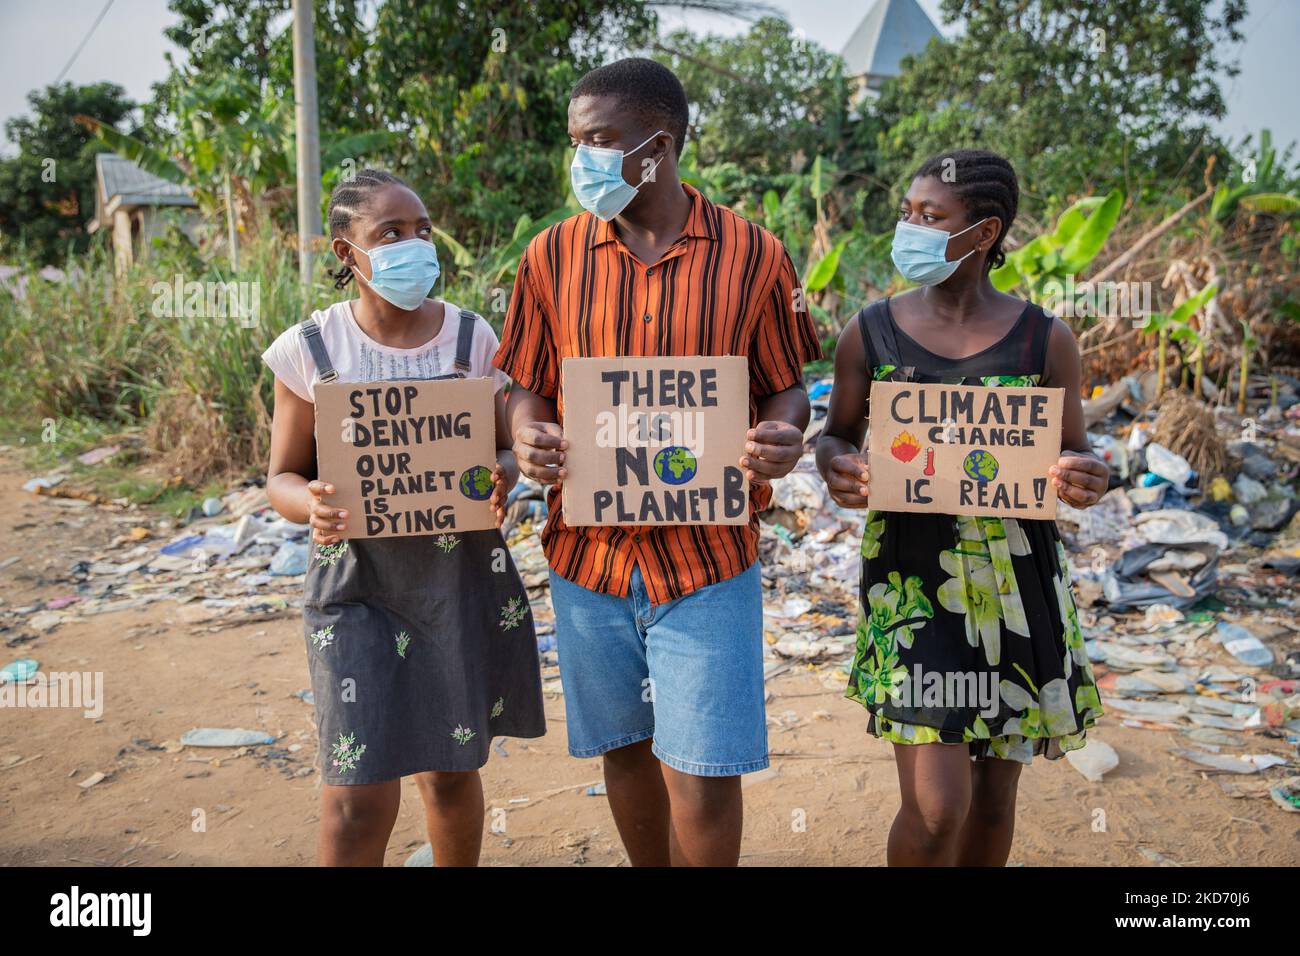 La jeunesse africaine protestant contre le changement climatique, portant des signes et des masques. Banque D'Images